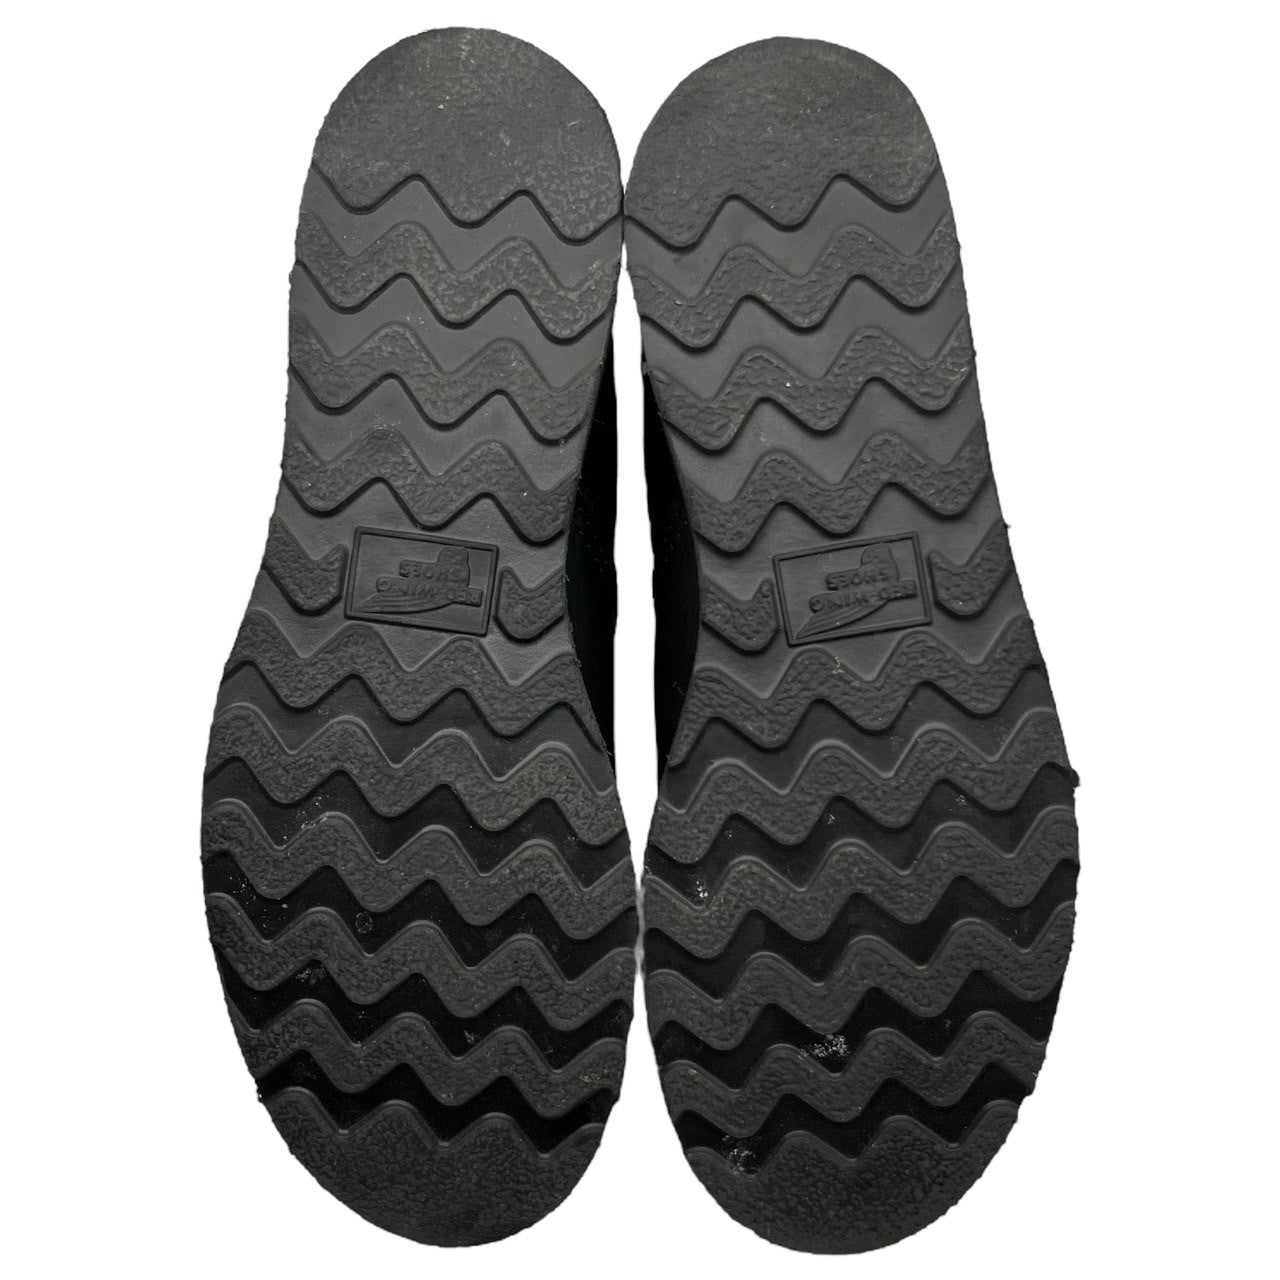 REDWING(レッドウィング) CLASSIC CHELSEA チェルシー ブーツ サイドゴア ブーツ 3194 7(25cm程度) ブラック